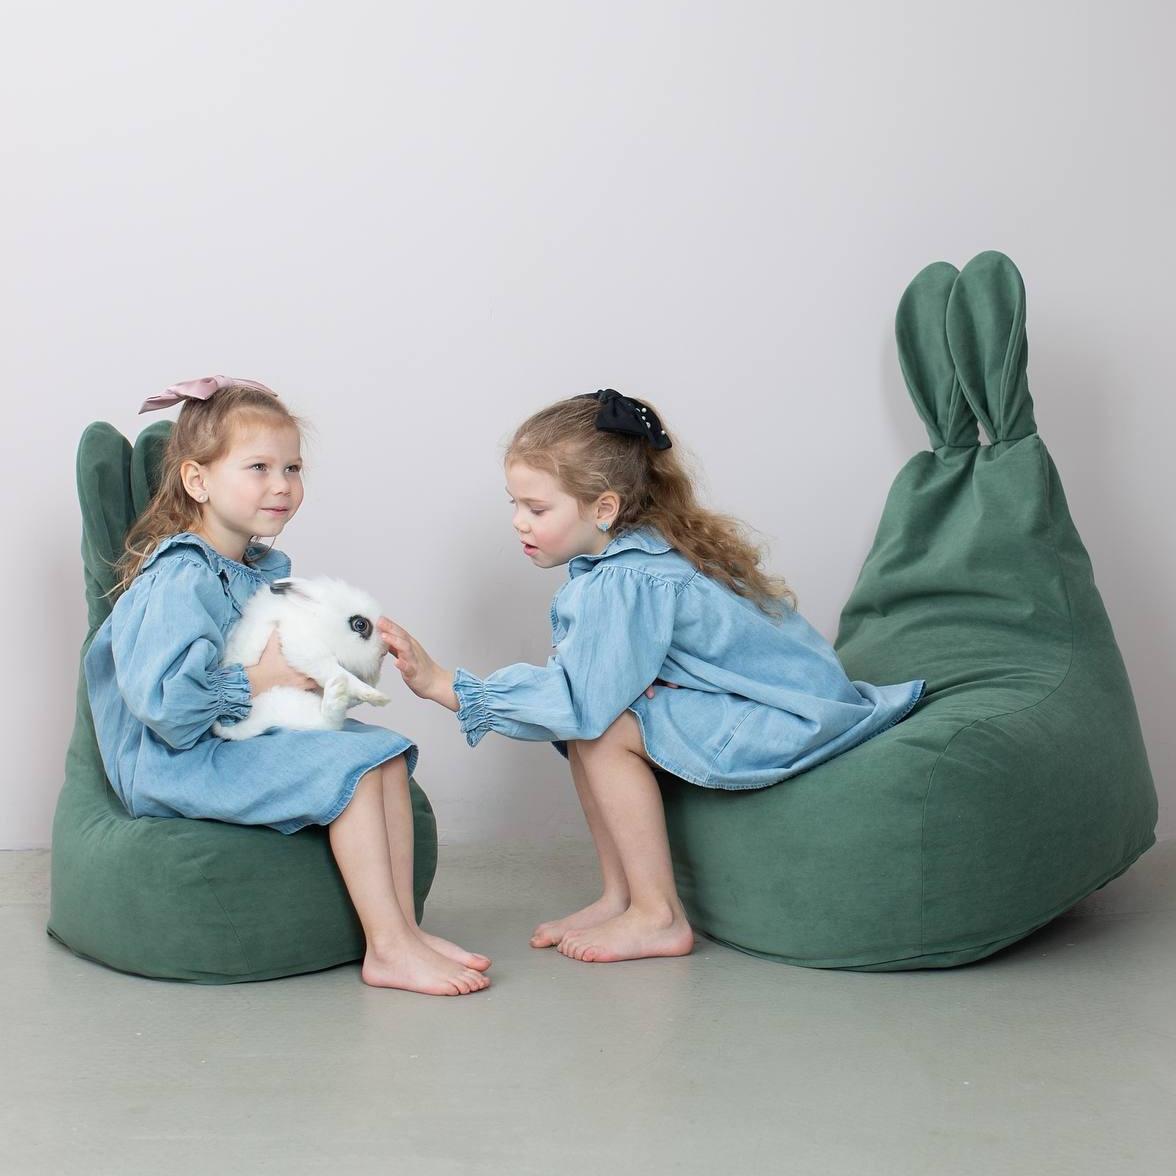 Пуф LOONA soft furniture "Заяц", большой, оливковый